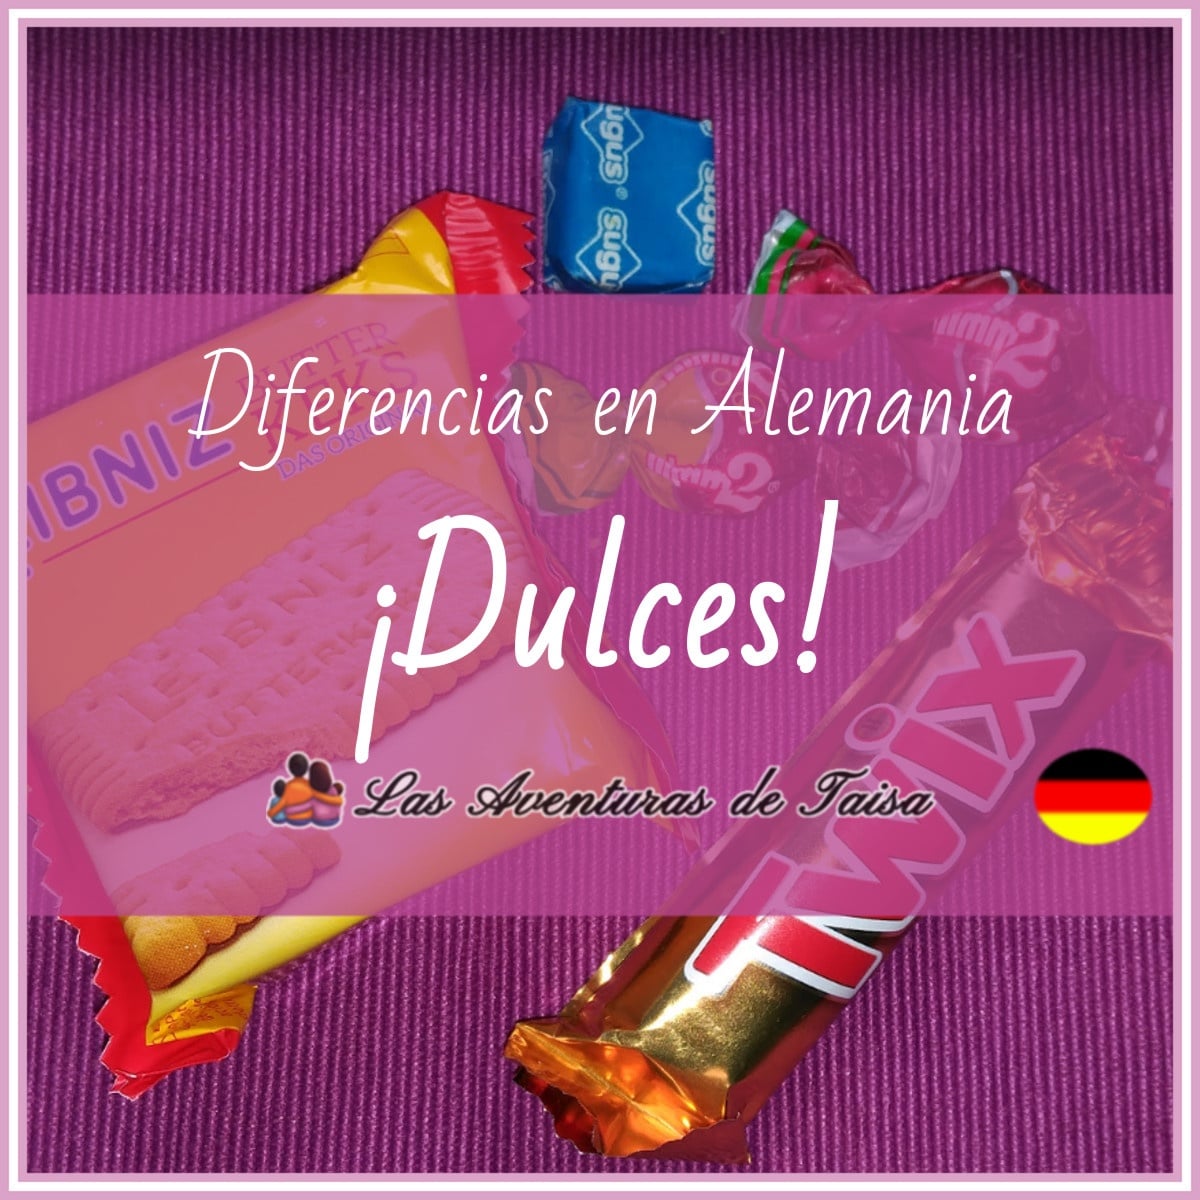 Los Dulces en Alemania – ¡No aceptes nada de los extraños! (Diferencia Nº 3)